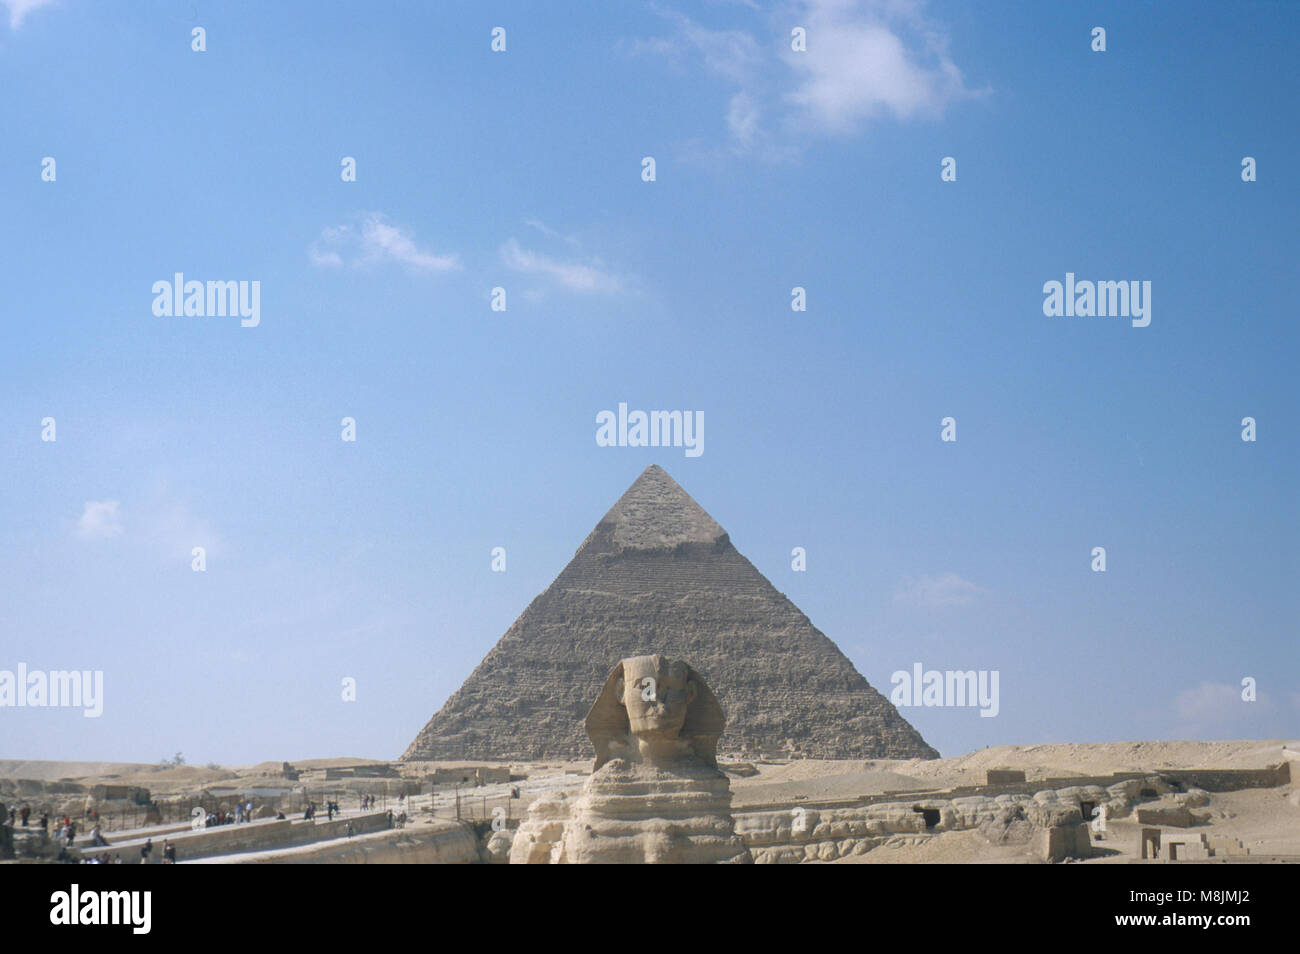 The Great Pyramids at Giza Stock Photo